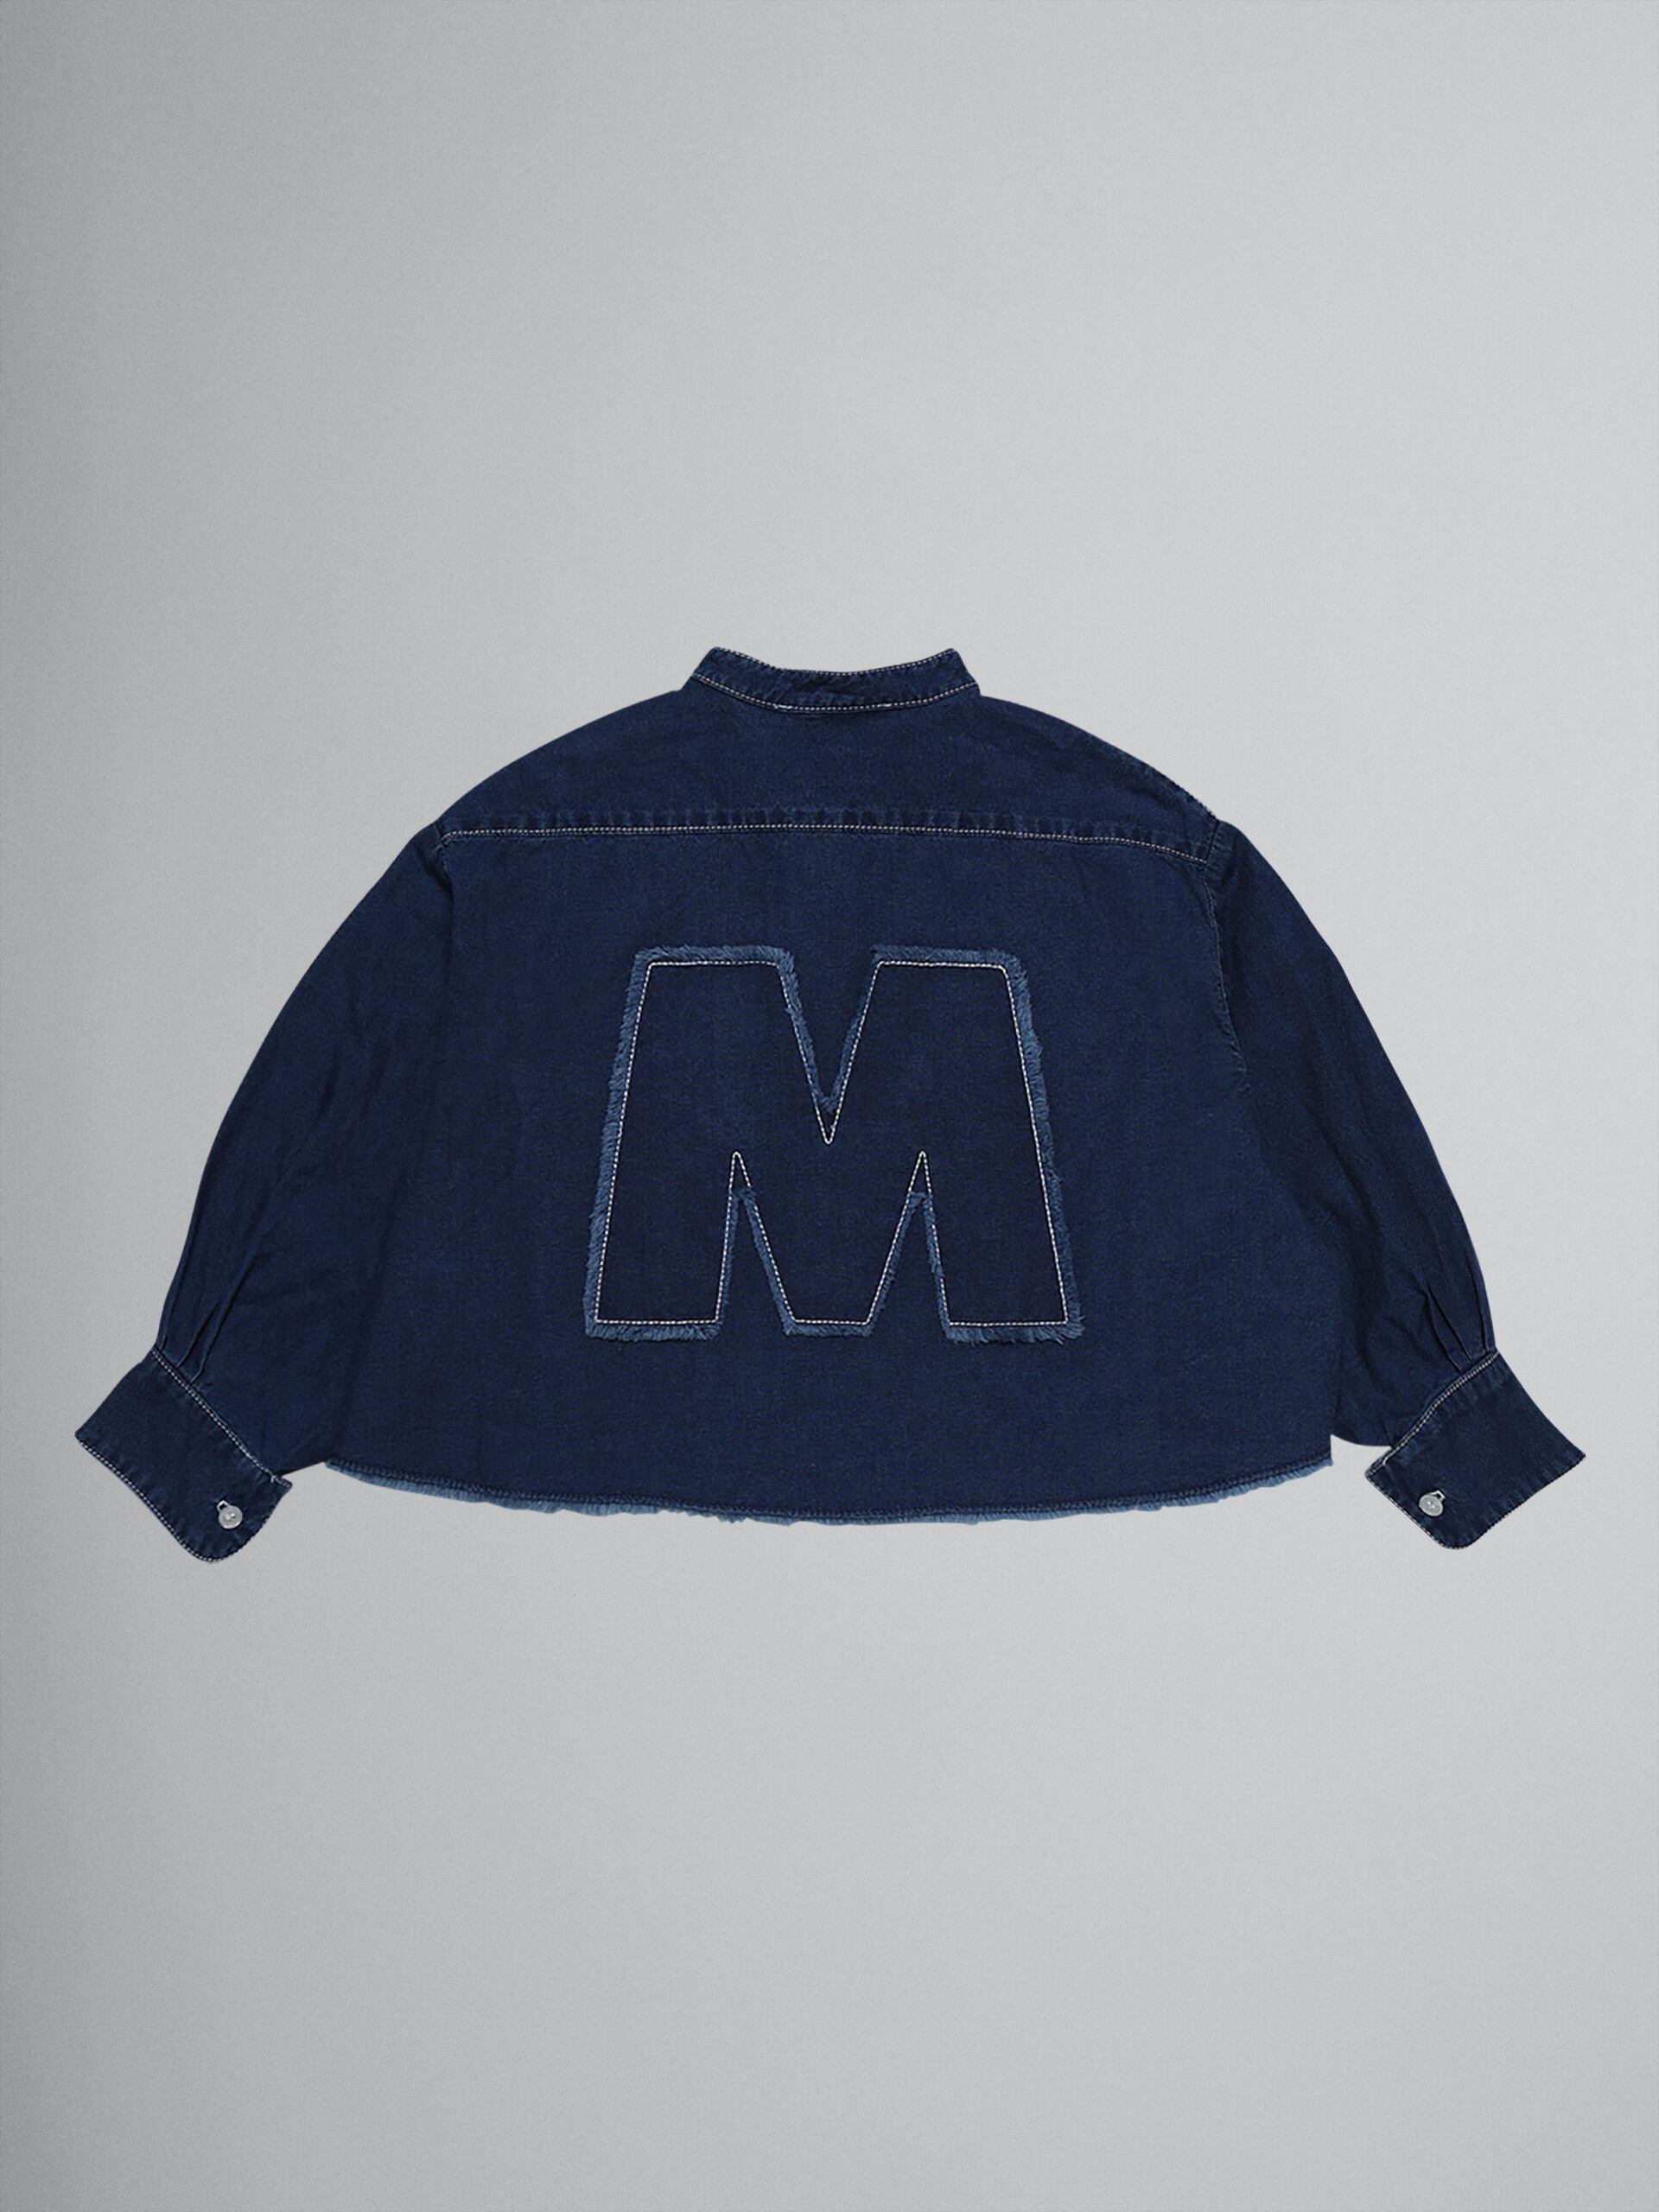 Camisa de denim "M" - Camisas - Image 2